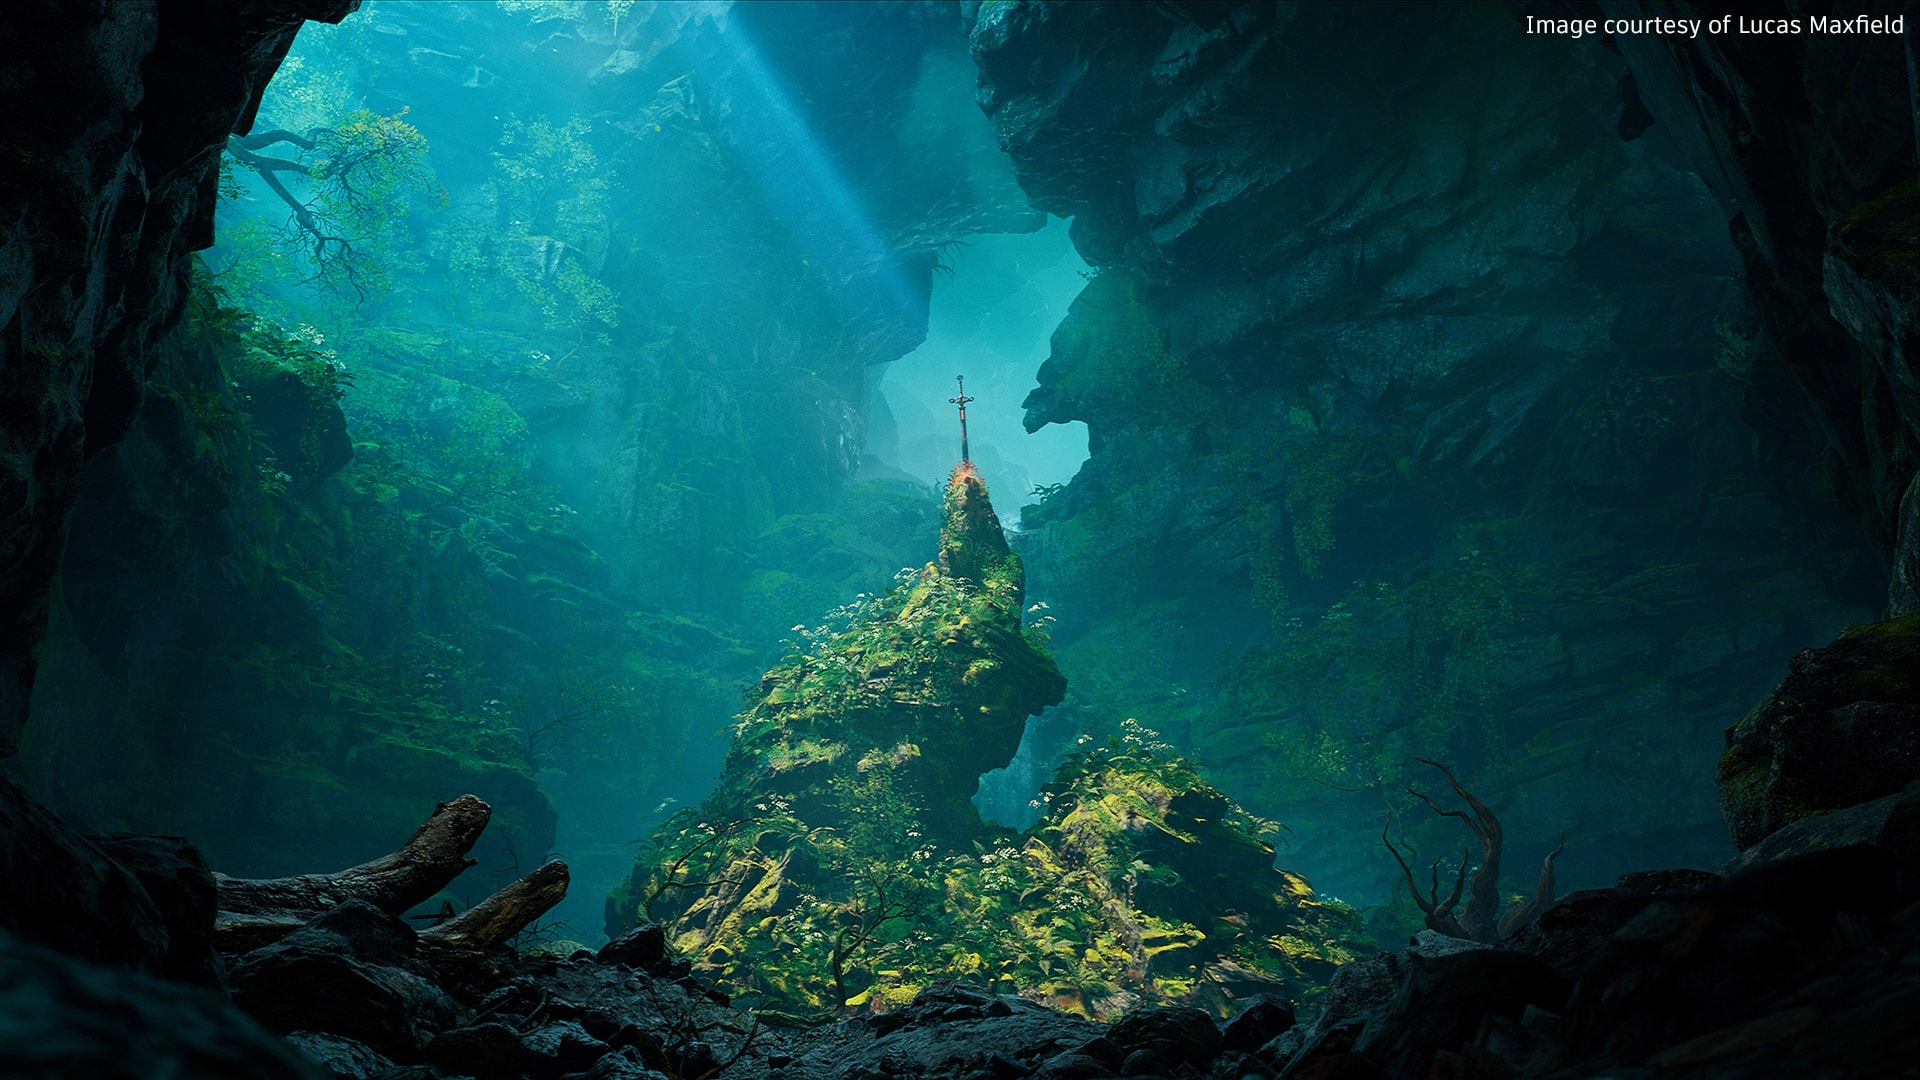 Sword planted onto rock formation in deep sea